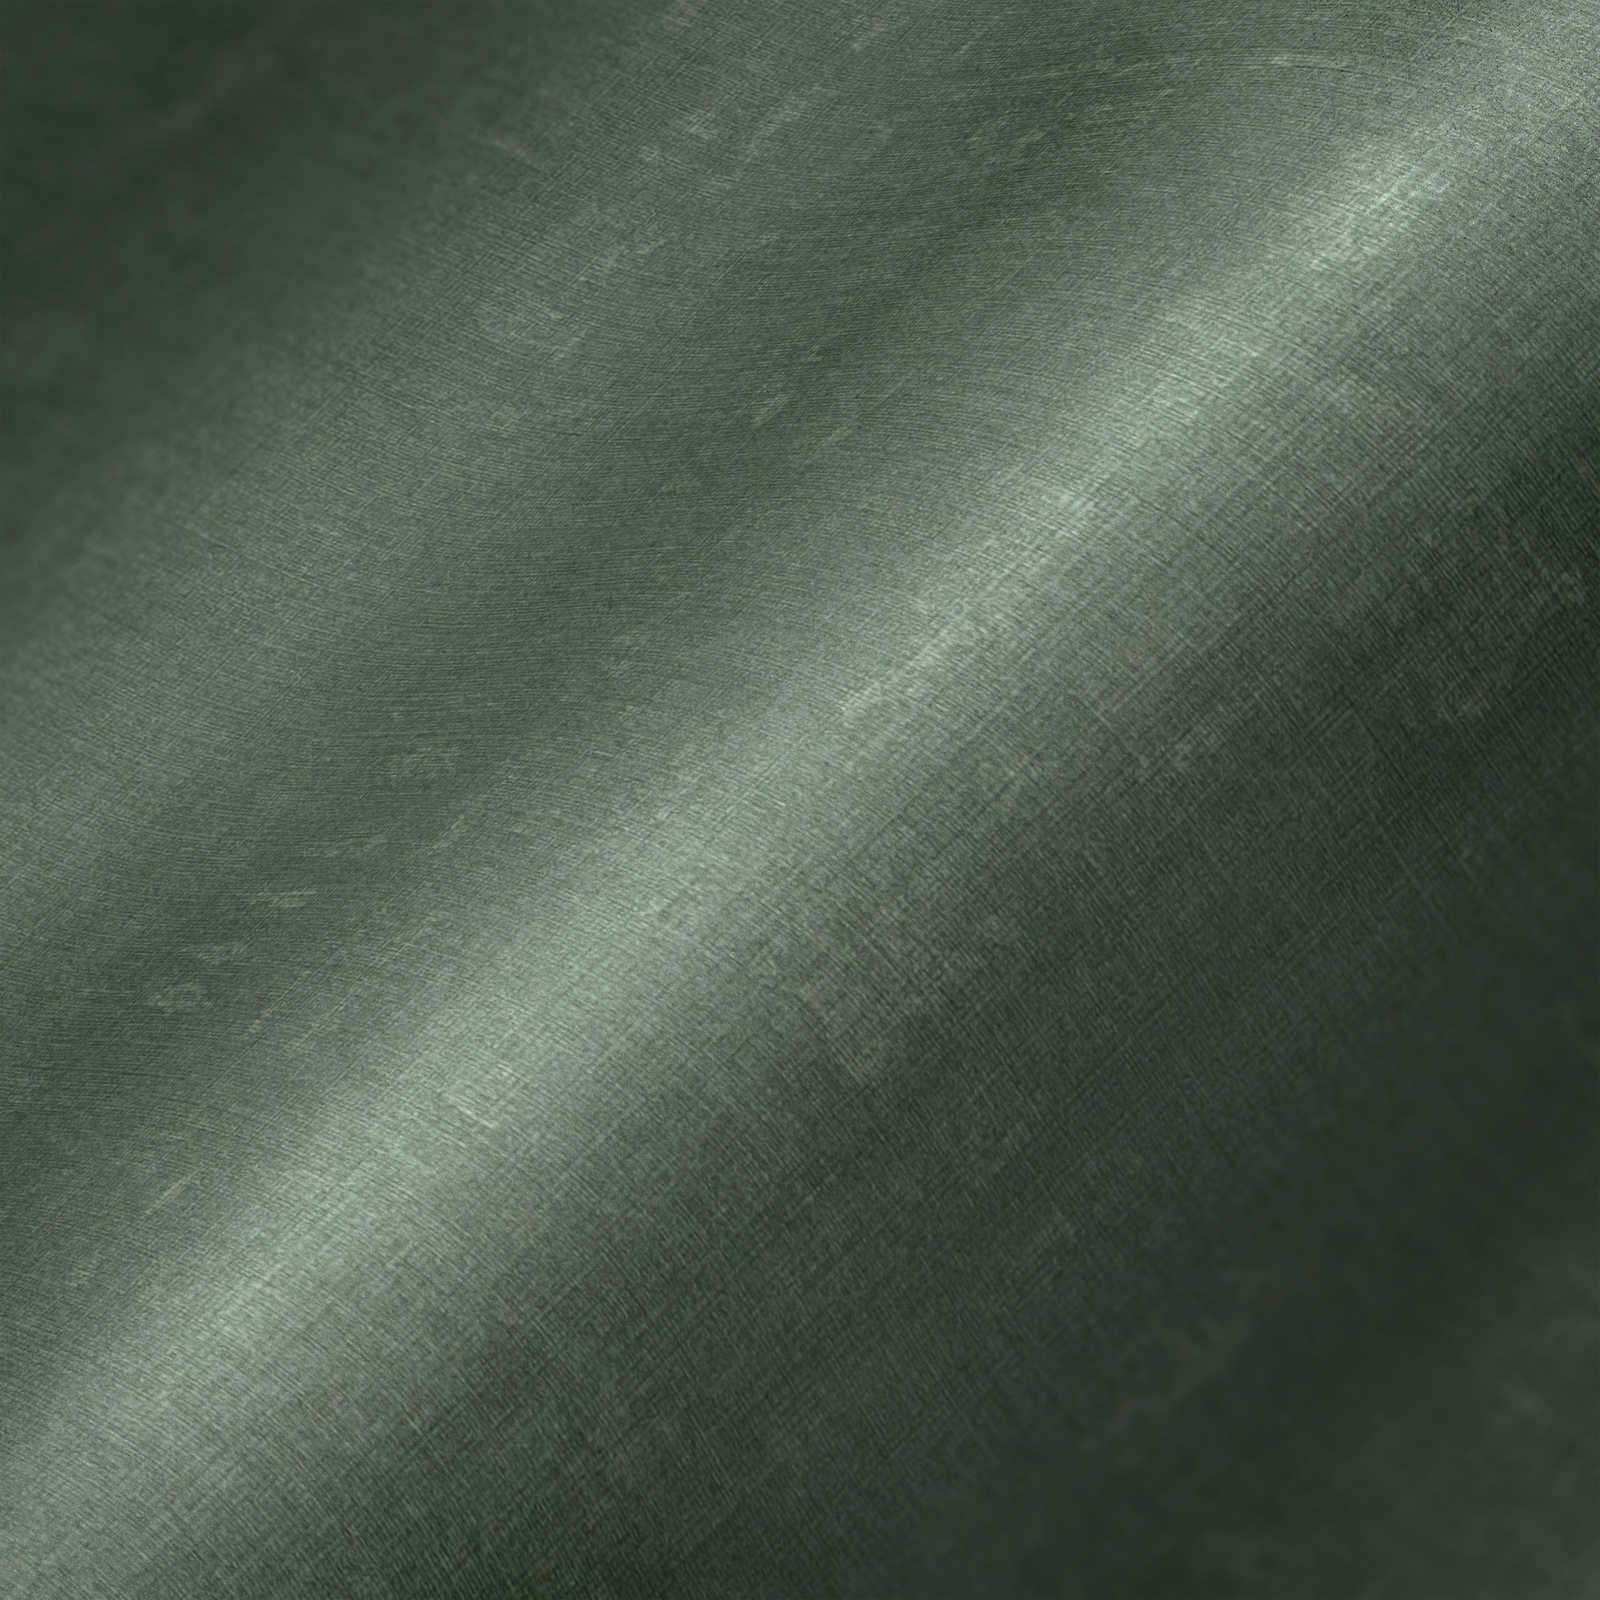             Papier peint vert uni et chiné avec gaufrage structuré
        